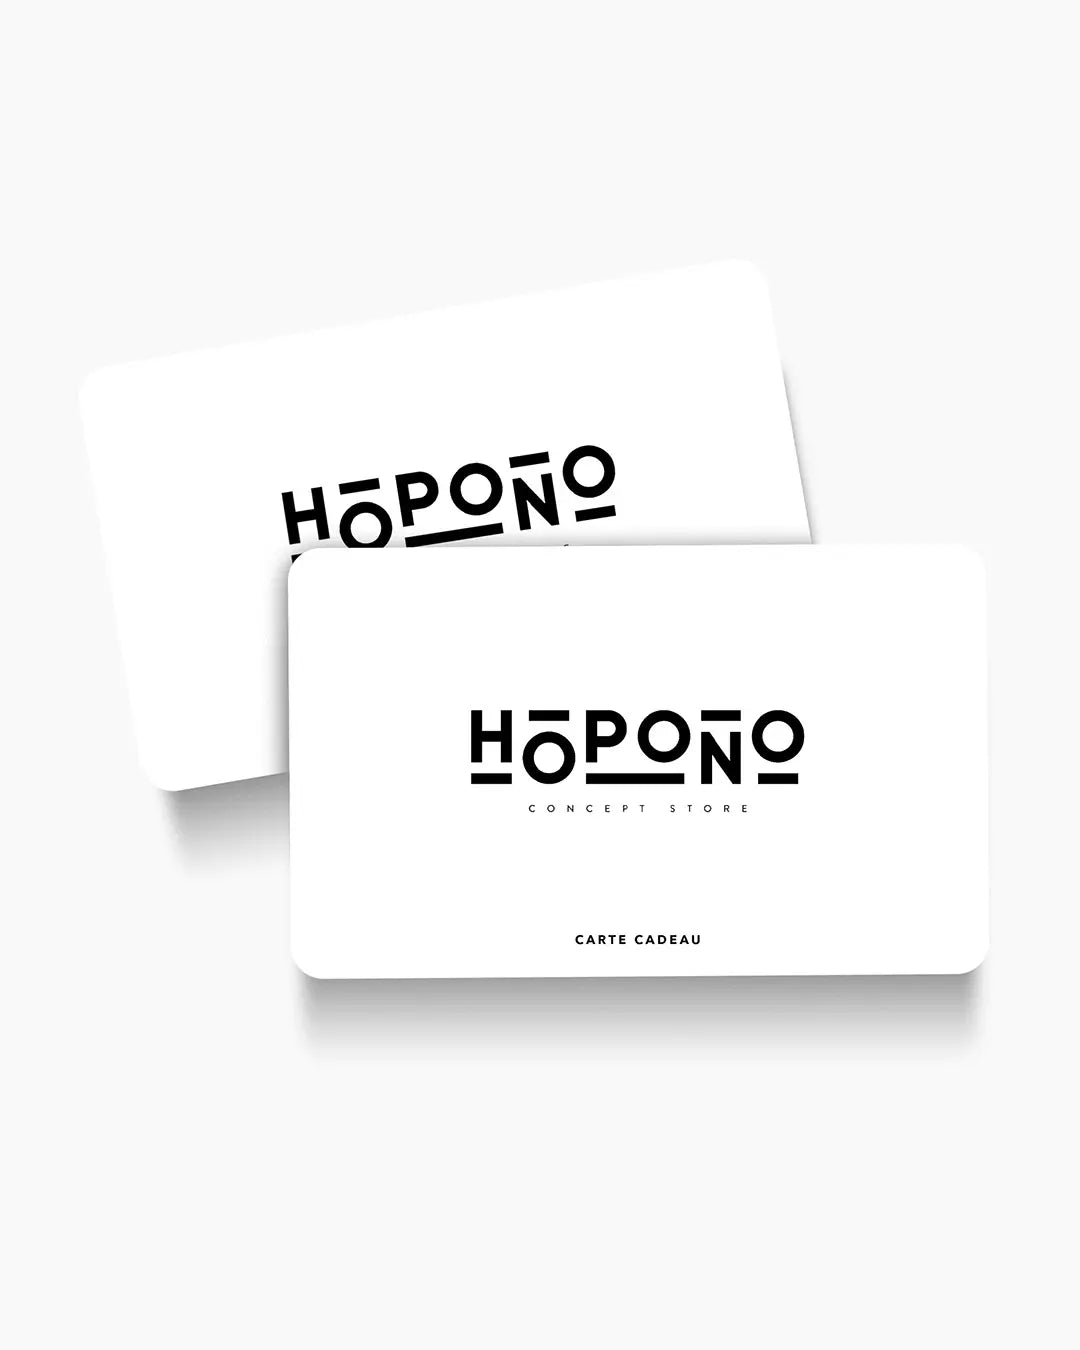 Hopono Concept Store - Carte Cadeau